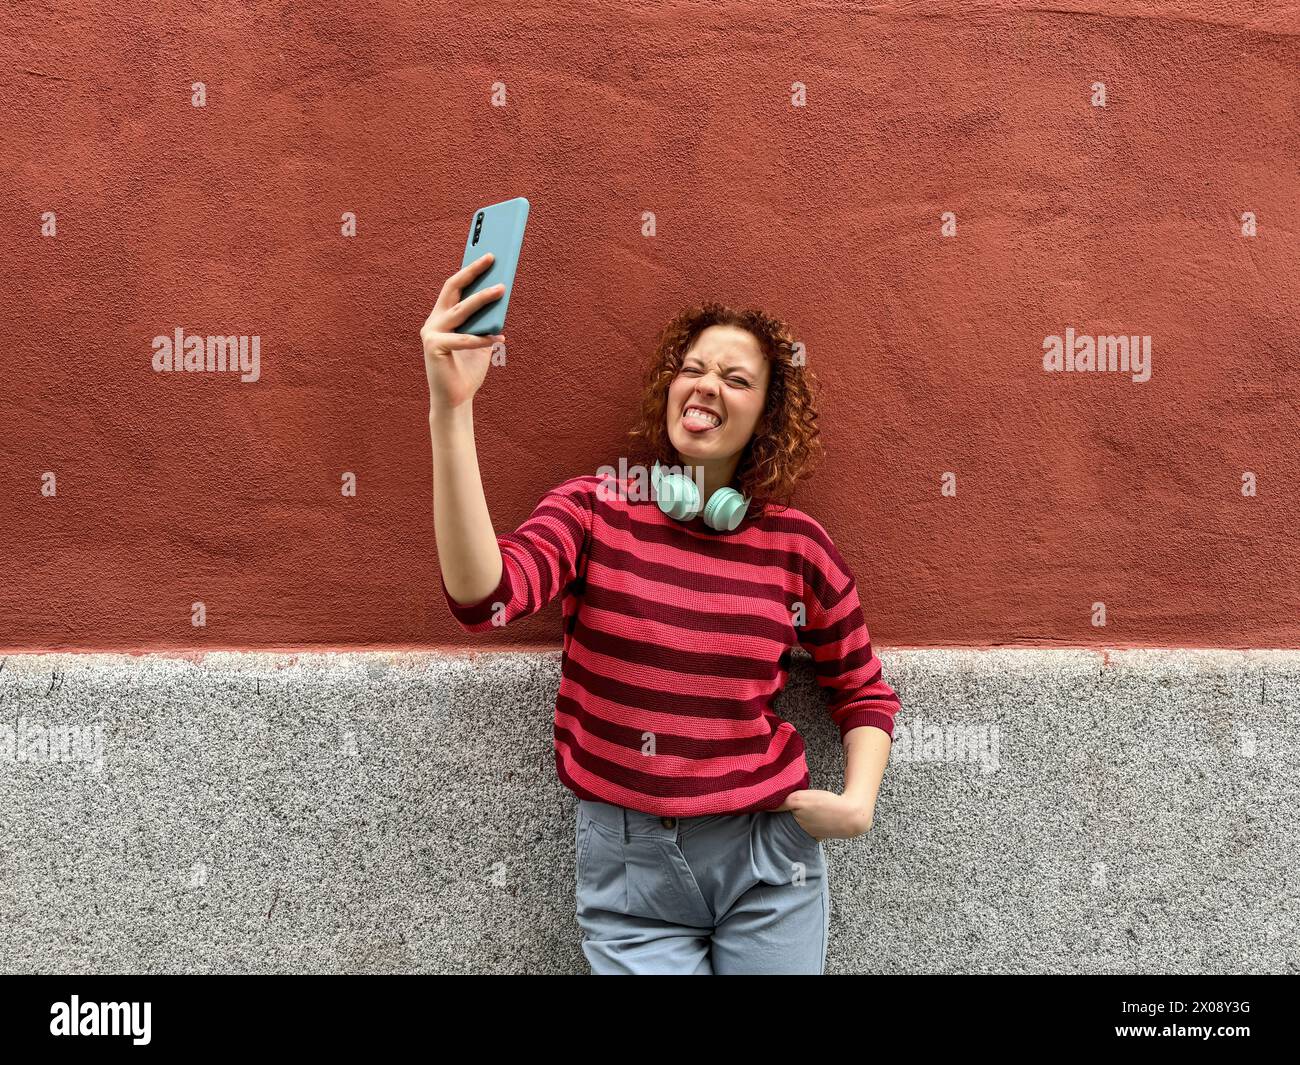 La giovane donna allegra con una camicia a righe e le cuffie si attacca scherzosamente con la lingua mentre scatta un selfie contro un muro rosso Foto Stock